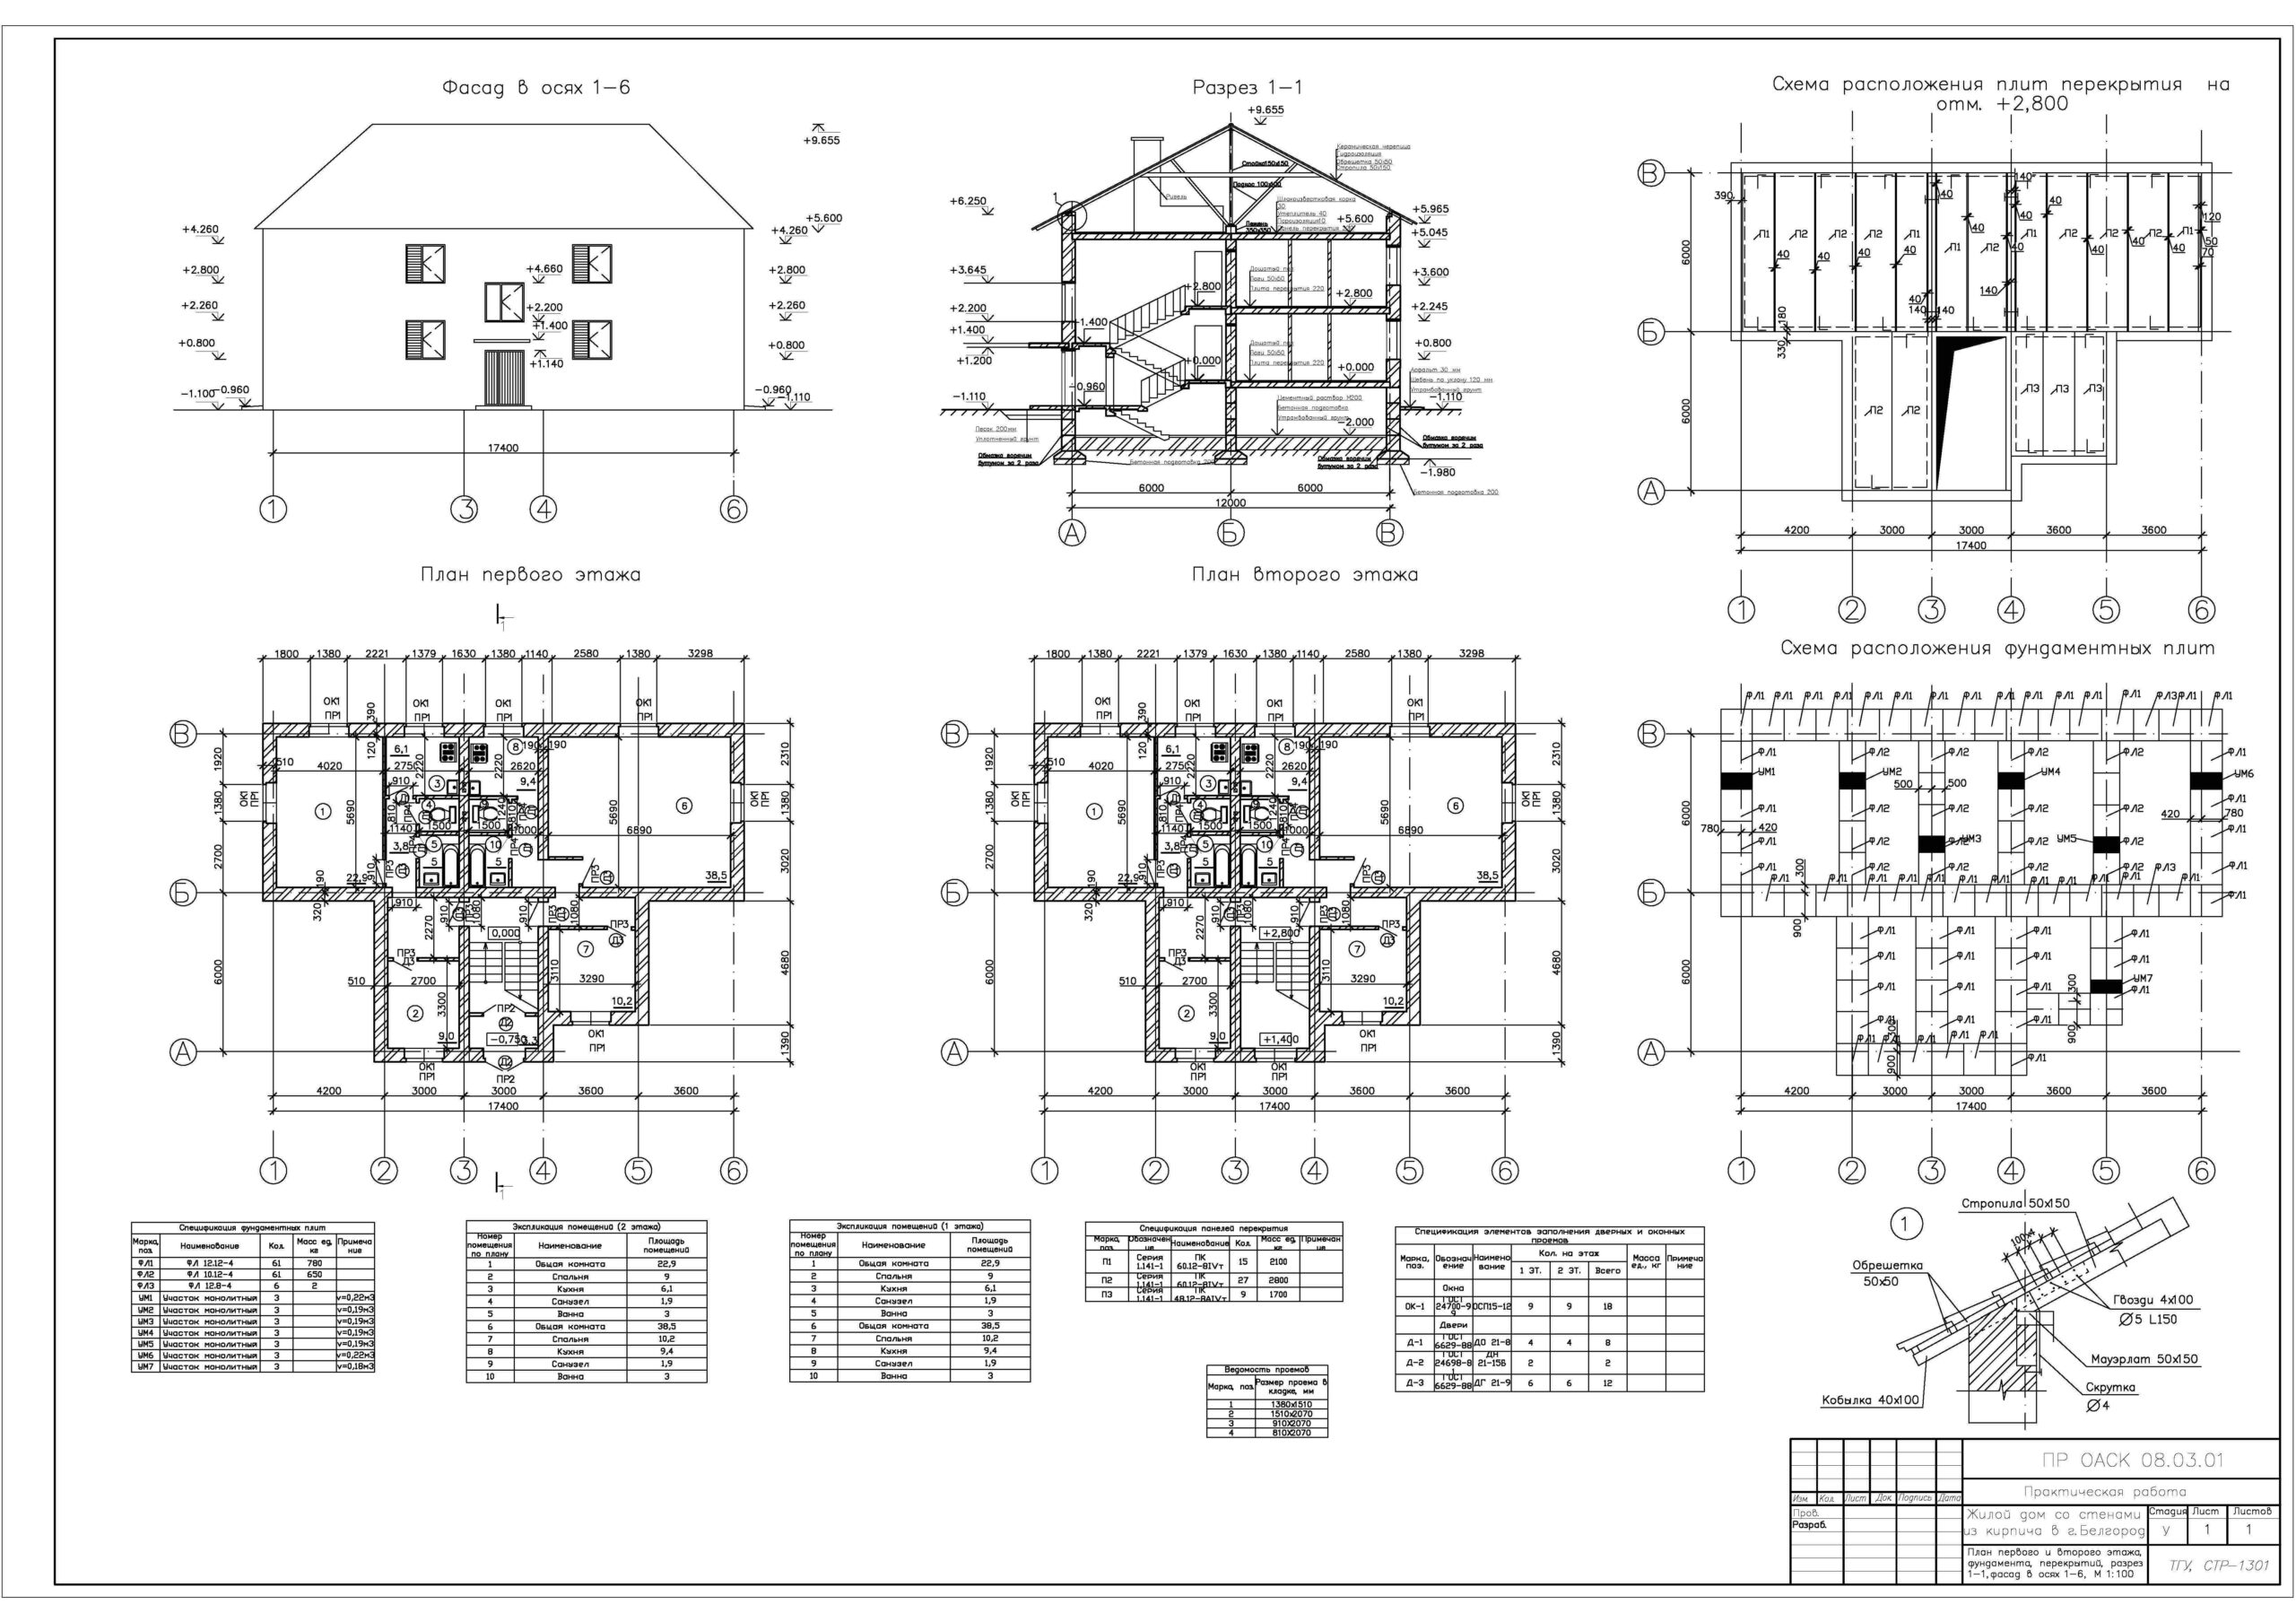 Основы архитектуры и строительных конструкций тесты с ответами